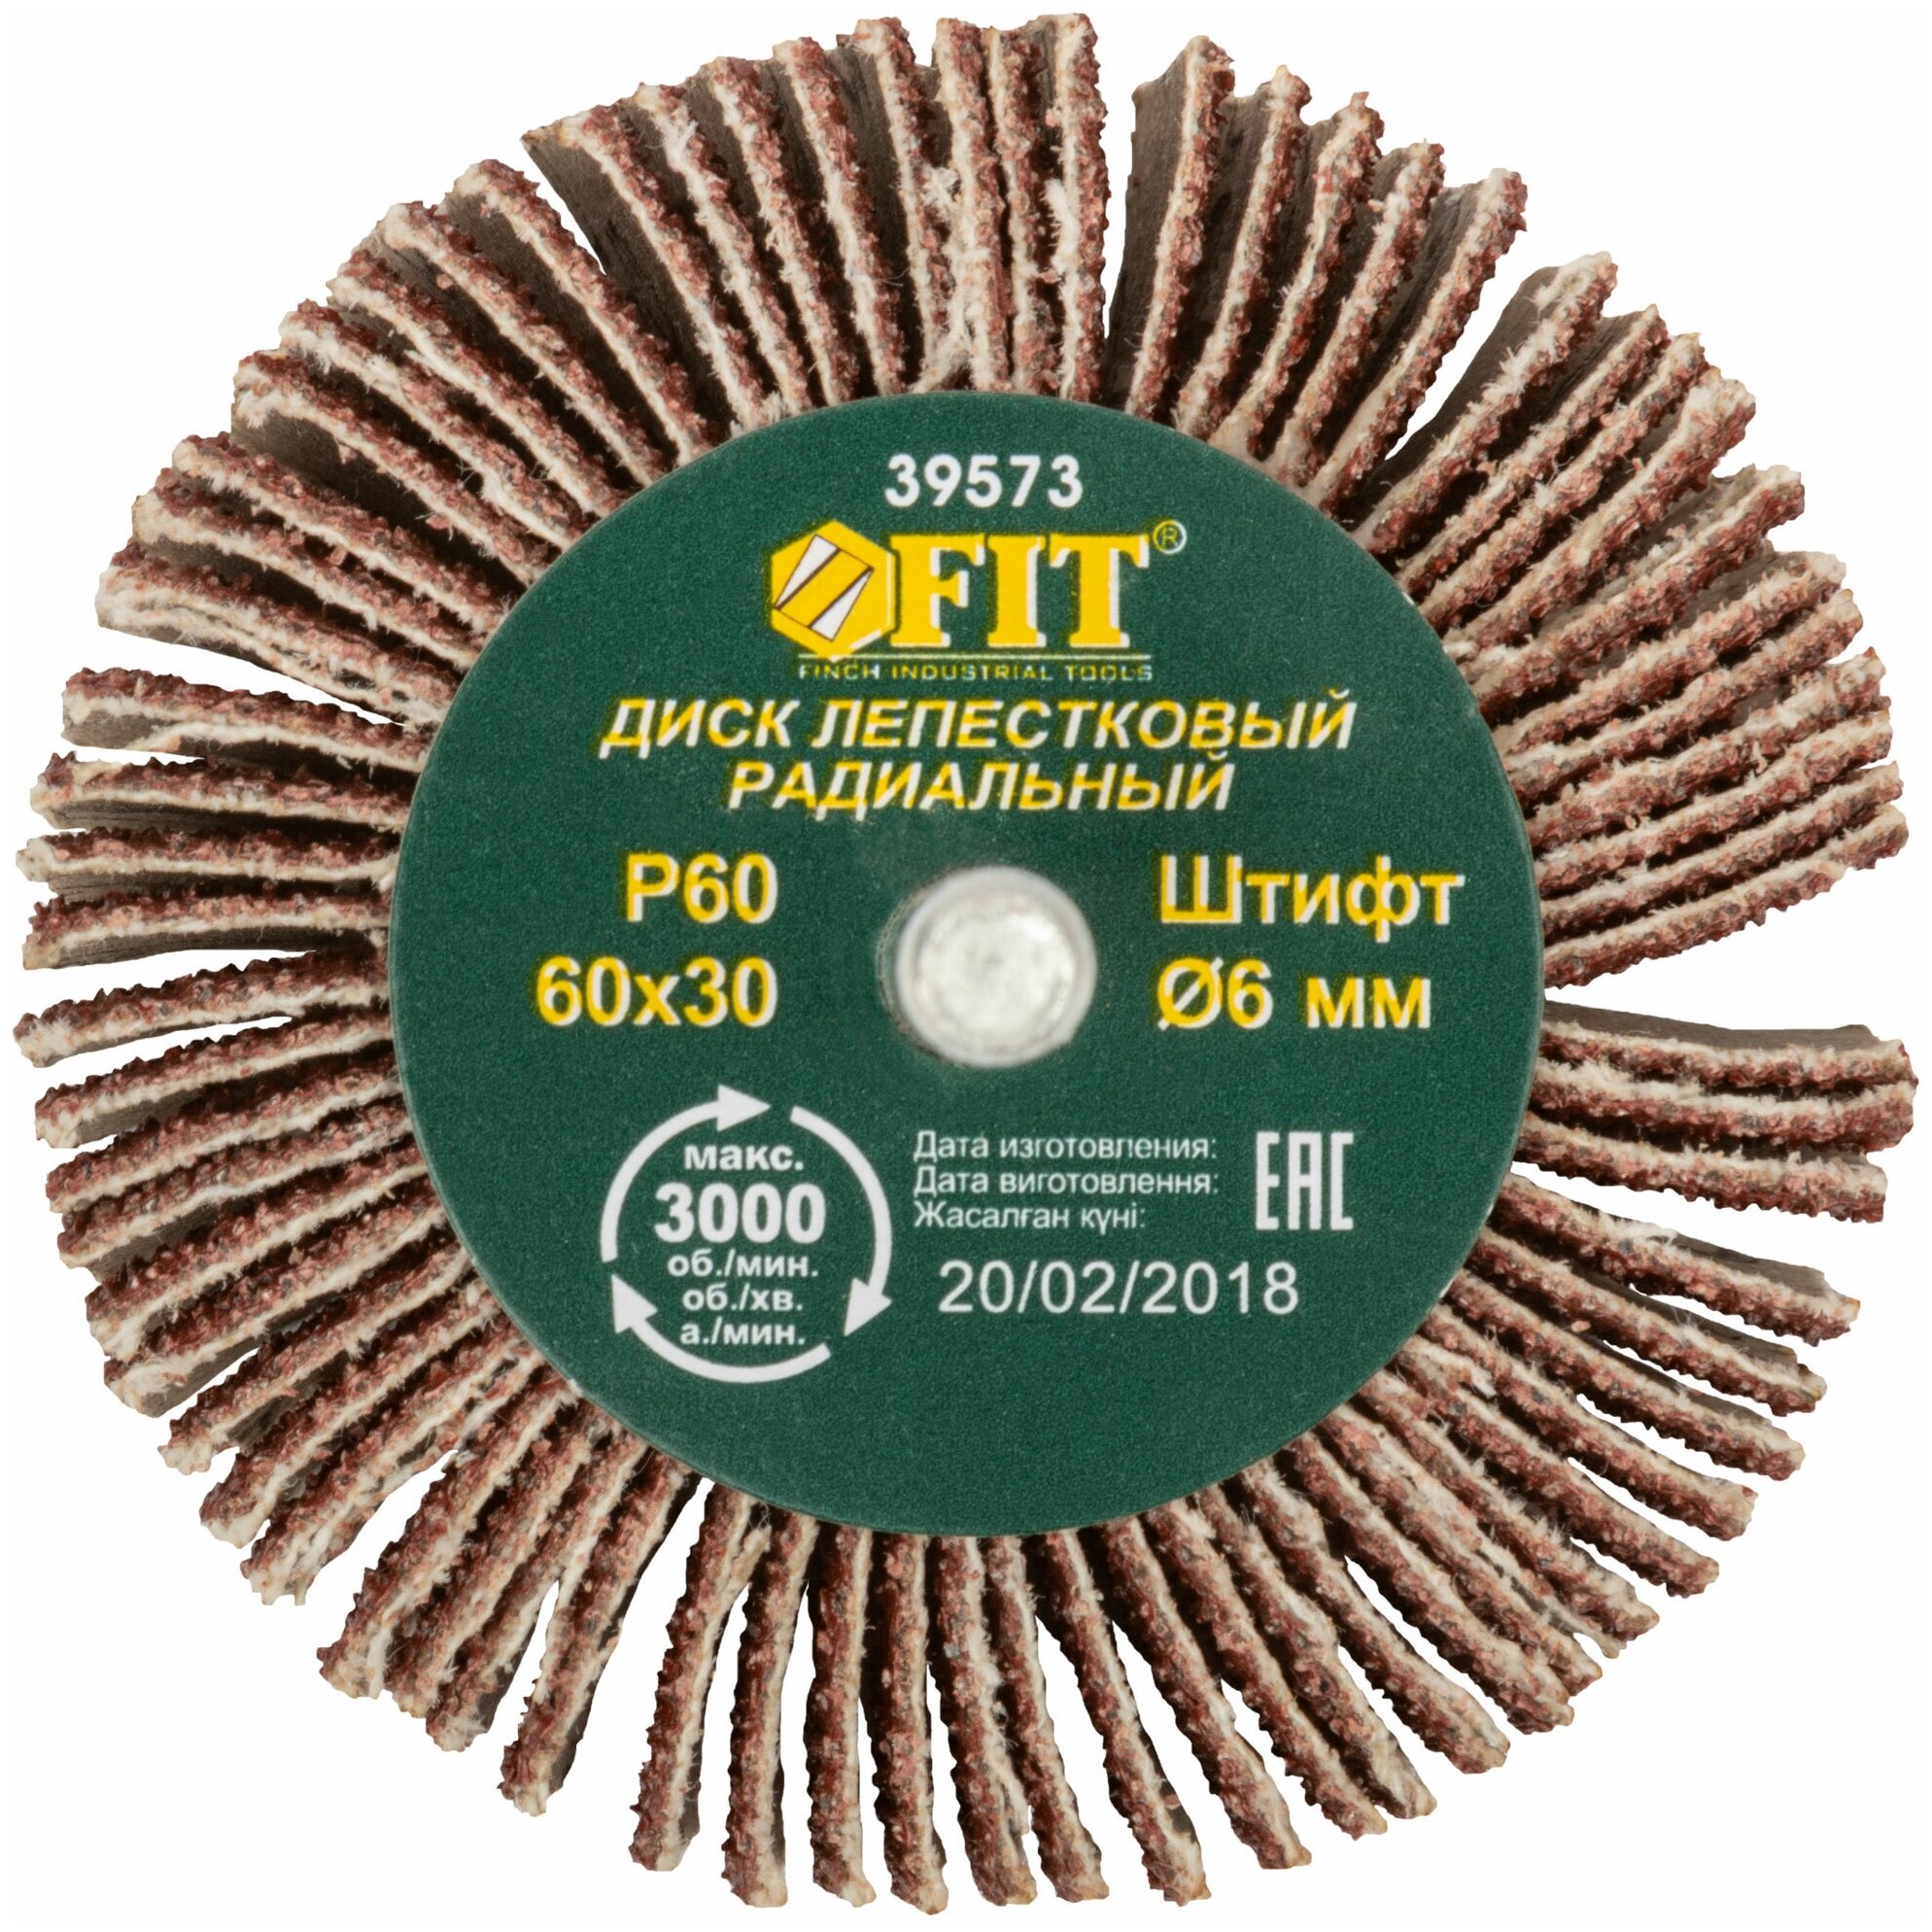 FIT Диск лепестковый для дрели радиальный 60 х 30 х 6 мм Р60 FIT 39573